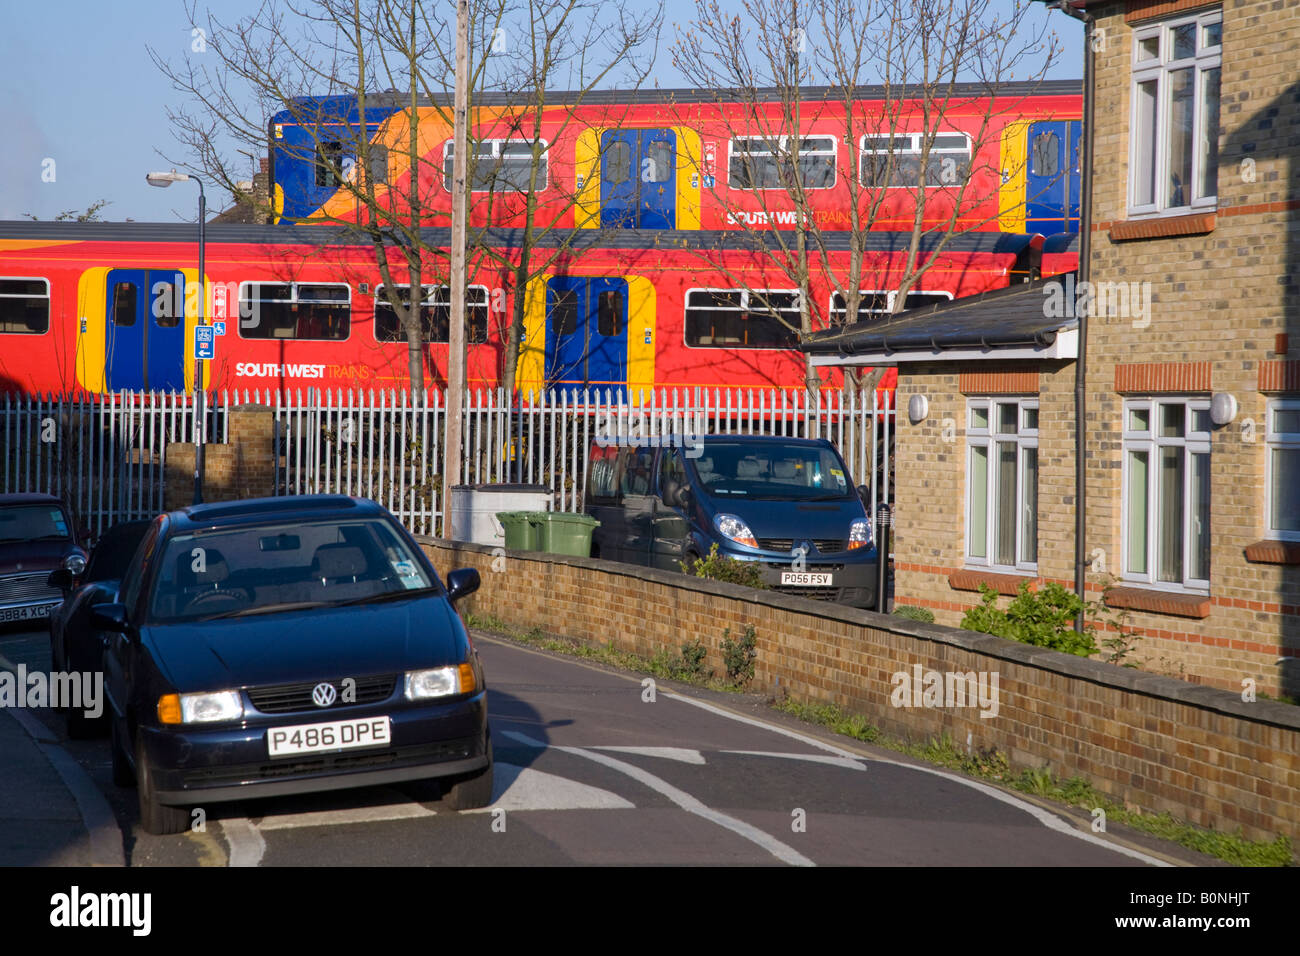 Zwei vorbeifahrenden Züge in einem Wohngebiet, auf verschiedenen Strecken und in der Nähe von parkenden Autos vorbei. Twickenham, Westlondon. VEREINIGTES KÖNIGREICH. Stockfoto